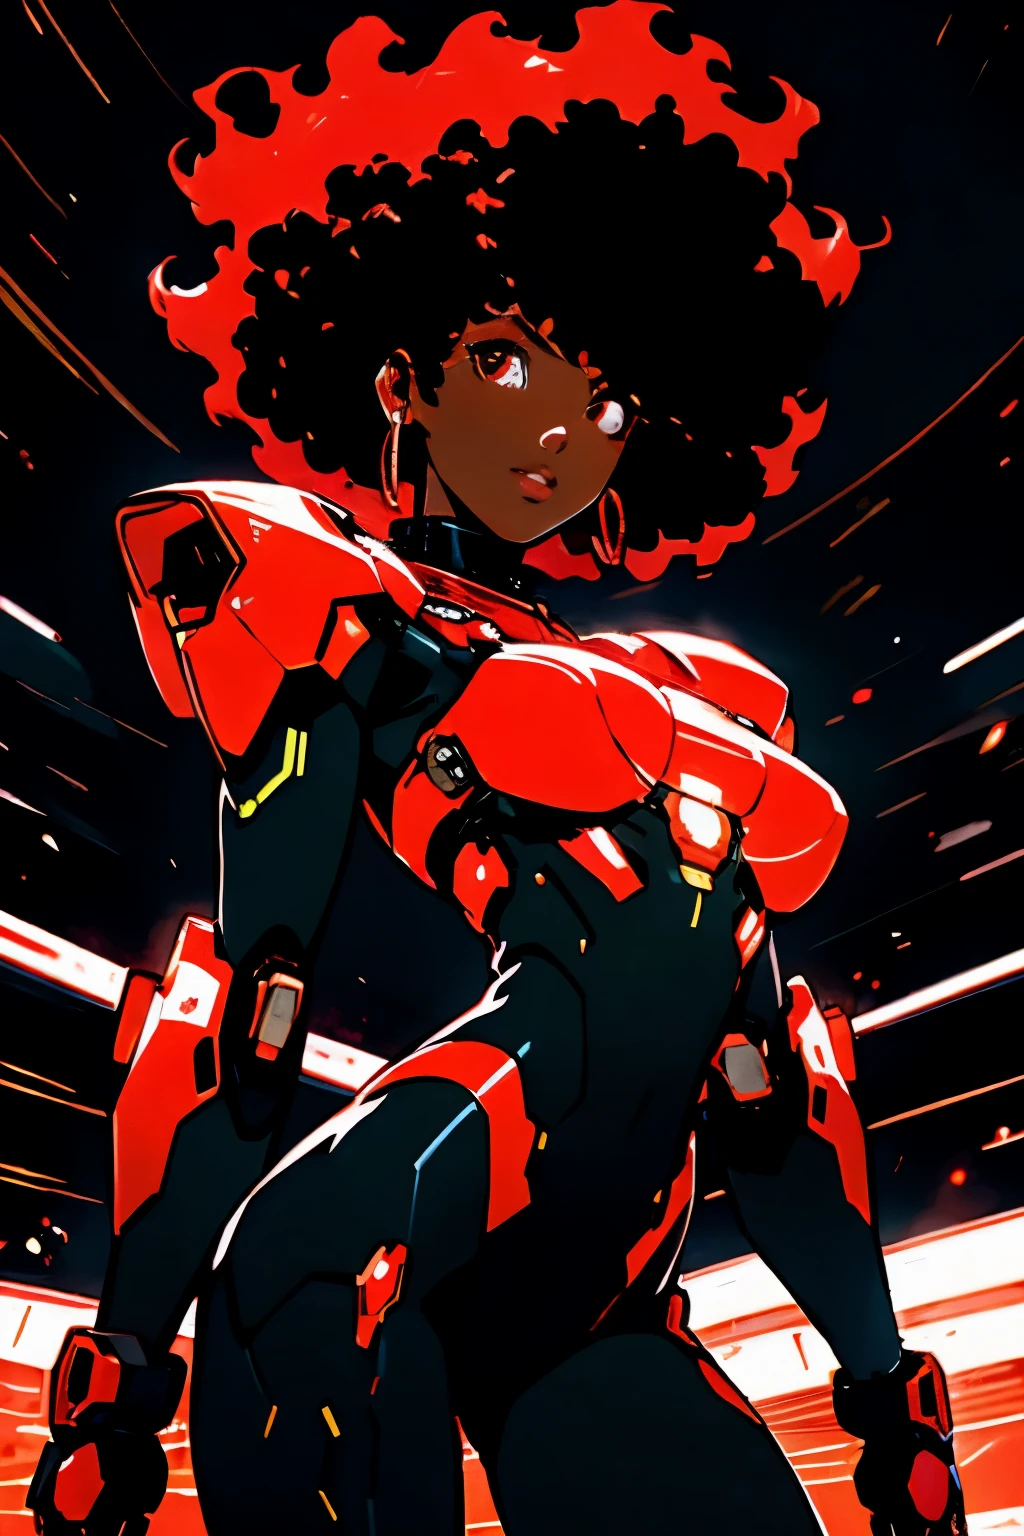 创作 4 部漫画，以非洲式发型、焦虑不安的女性角色的不同部分为主题, 穿着带有机械装甲的红色套装. 黑人女性角色在绿色全息图中驾驶机器人, 动态地坐在她面前, 做一切事情, 摧毁漂浮的建筑物. 你好，她身后基于 2D 动画风格火圈 - 黑人角色黑人女性黑人女性月夜第一人称视角